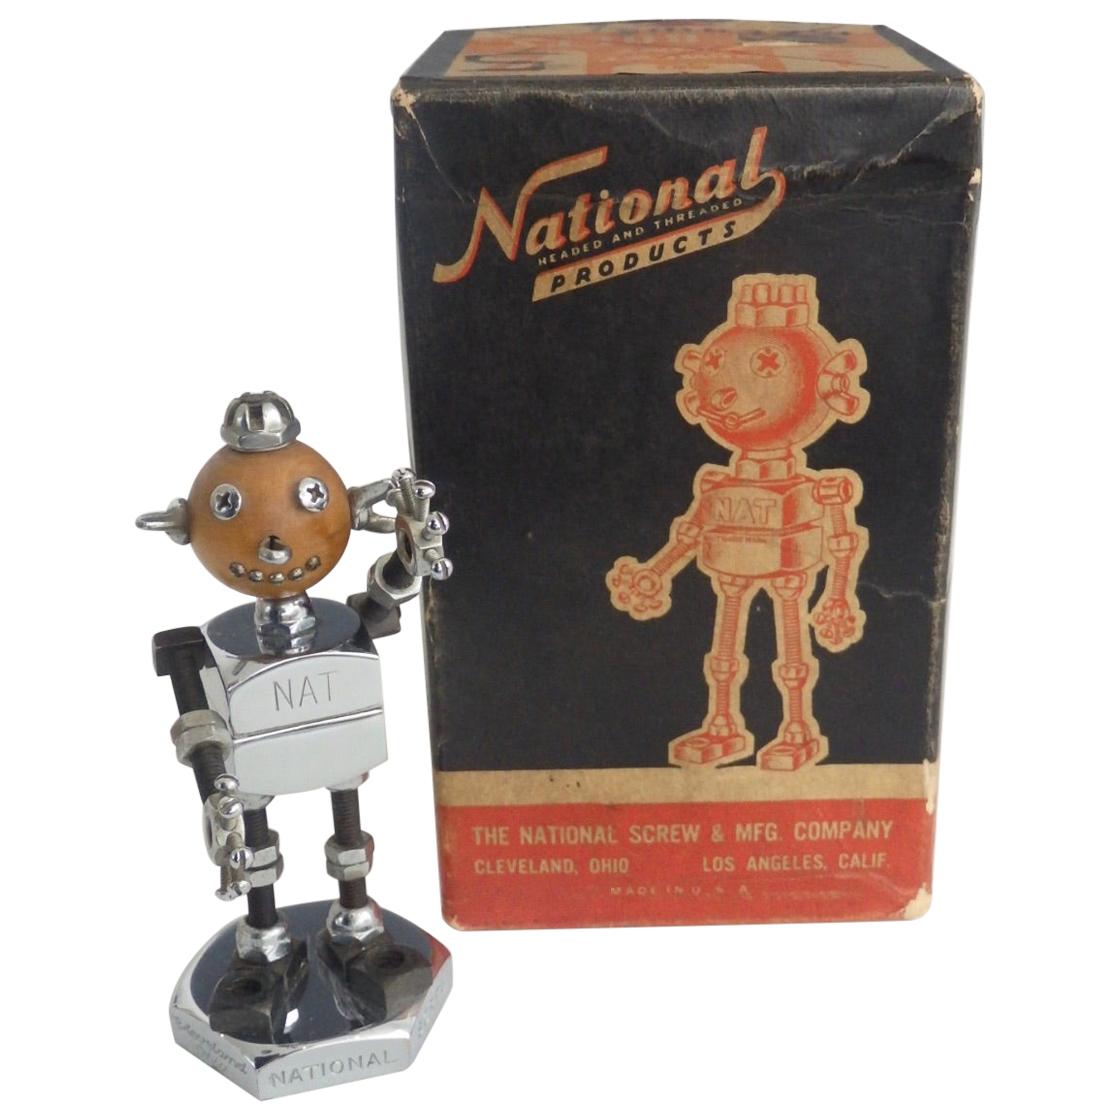 National Hardware Desk Top Advertising Logo Robot Sculpture For Sale